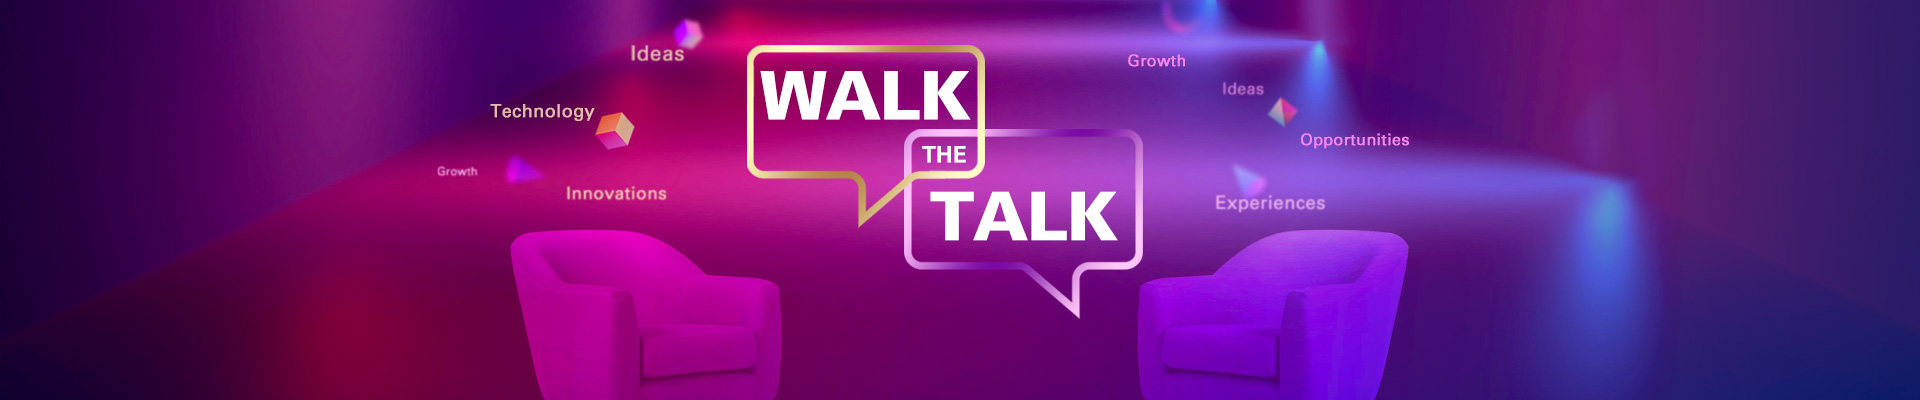 walk the talk.jpg